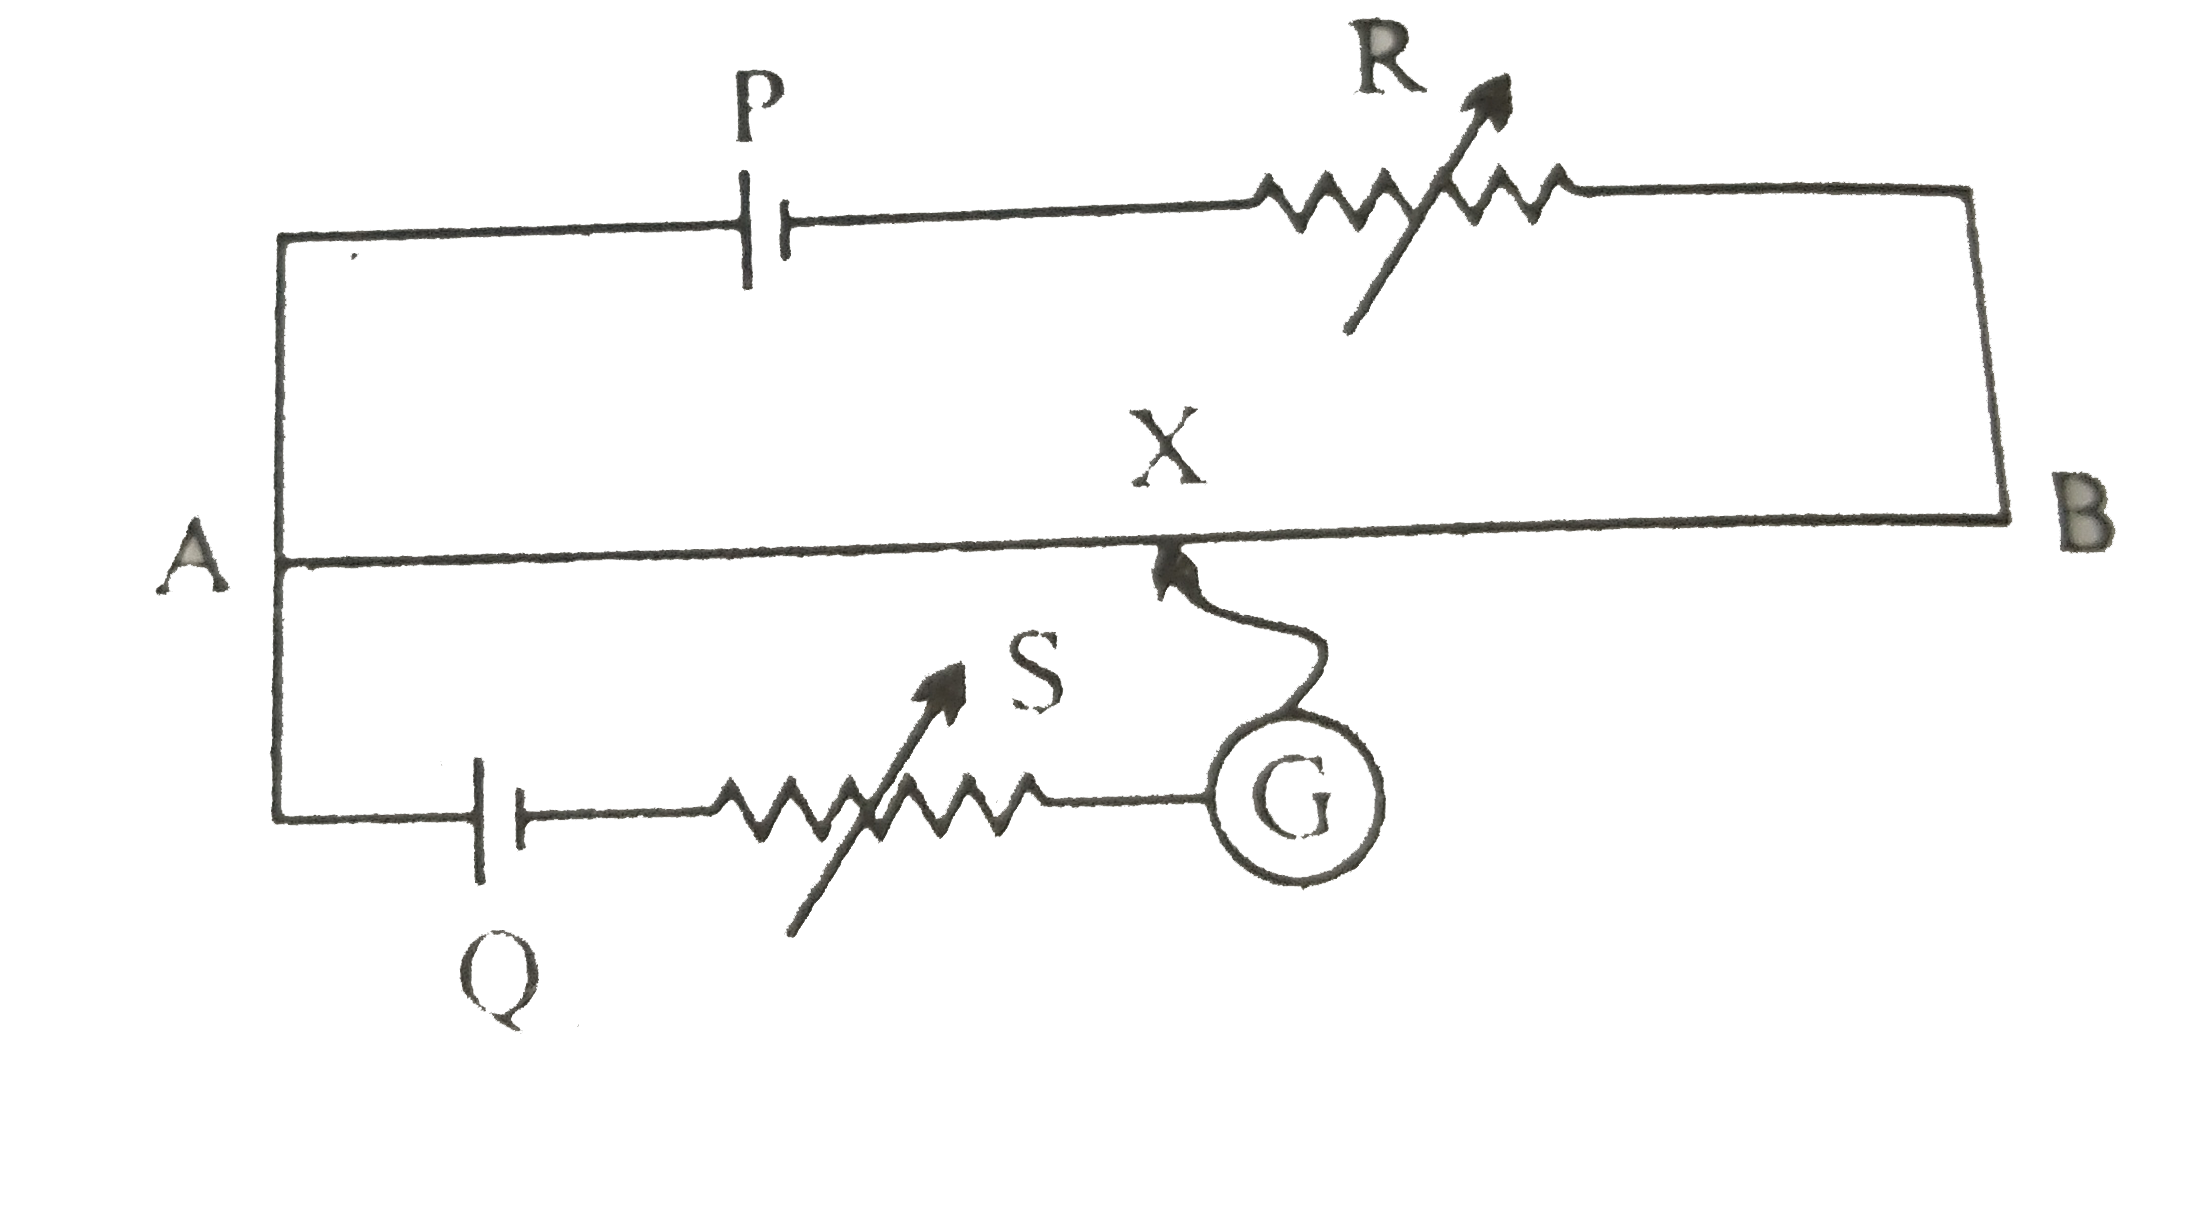 चित्र में एक पोटेशियोमीटर दर्शाया गया है जिसमे एक 2.0V और आंतरिक प्रतिरोध 0.40Omega का कोई सेल, पोटेशियोमीटर के प्रतिरोधक तार AB पर वोल्टता पात बनाए रखता है। कोई मानक सेल जो 1.02V  का अचर विद्युत वाहक बल बनाए रखता है (कुछ mA की बहुत सामान्य धाराओं के लिए) तार की 67.3cm लंबाई पर संतुलन बिंदु देता है। मानक सेल से अति न्यून धारा लेना सुनिश्चित करने के लिए इसके साथ परिपथ में श्रेणी 600kOmega का एक अति उच्च प्रतिरोध इसके साथ संबद्ध किया जाता है, जिसके संतुलन बिंदु प्राप्त होने के निकट लघुपथित कर दिया जाता है। इसके बाद मानक सेल को किसी अज्ञात विद्युत वाहक बल epsilon के सेल से प्रतिस्थापित कर दिया जाता है जिससे संतुलन बिंदु तार की 82.3cm लंबाई पर प्राप्त होता है।      उपरोक्त स्थिति में यदि पोटेशियोमीटर के परिचालक सेल का विद्युत वाहक बल 20.0V के स्थान पर 1.0V हो तो क्या यह विधि फिर भी सफल रहेगी?